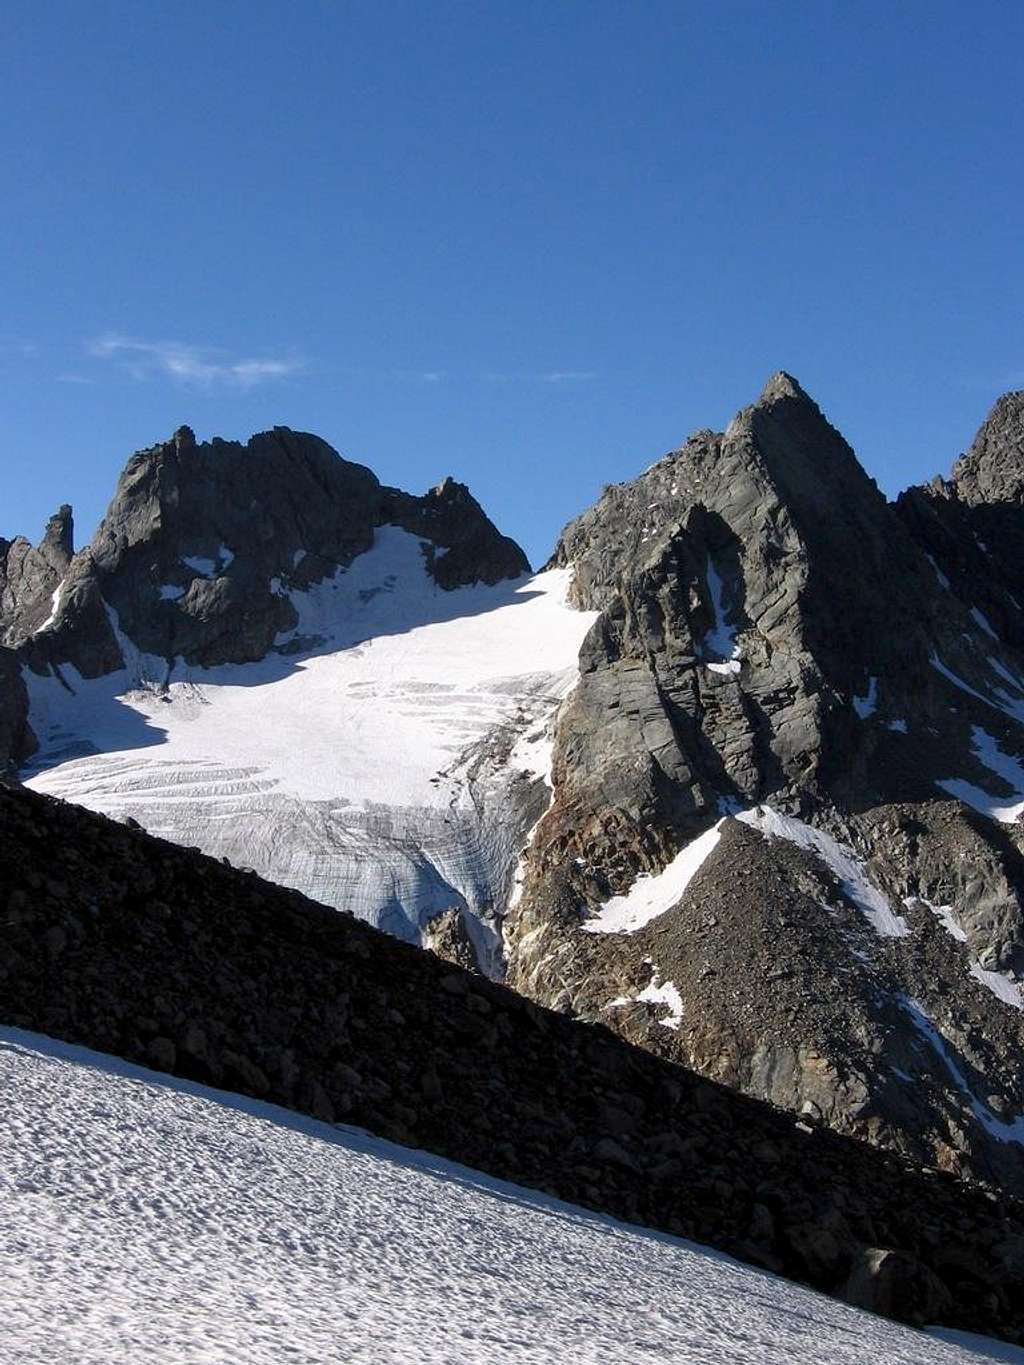 Snow slope on the morain of Scerscen glacier